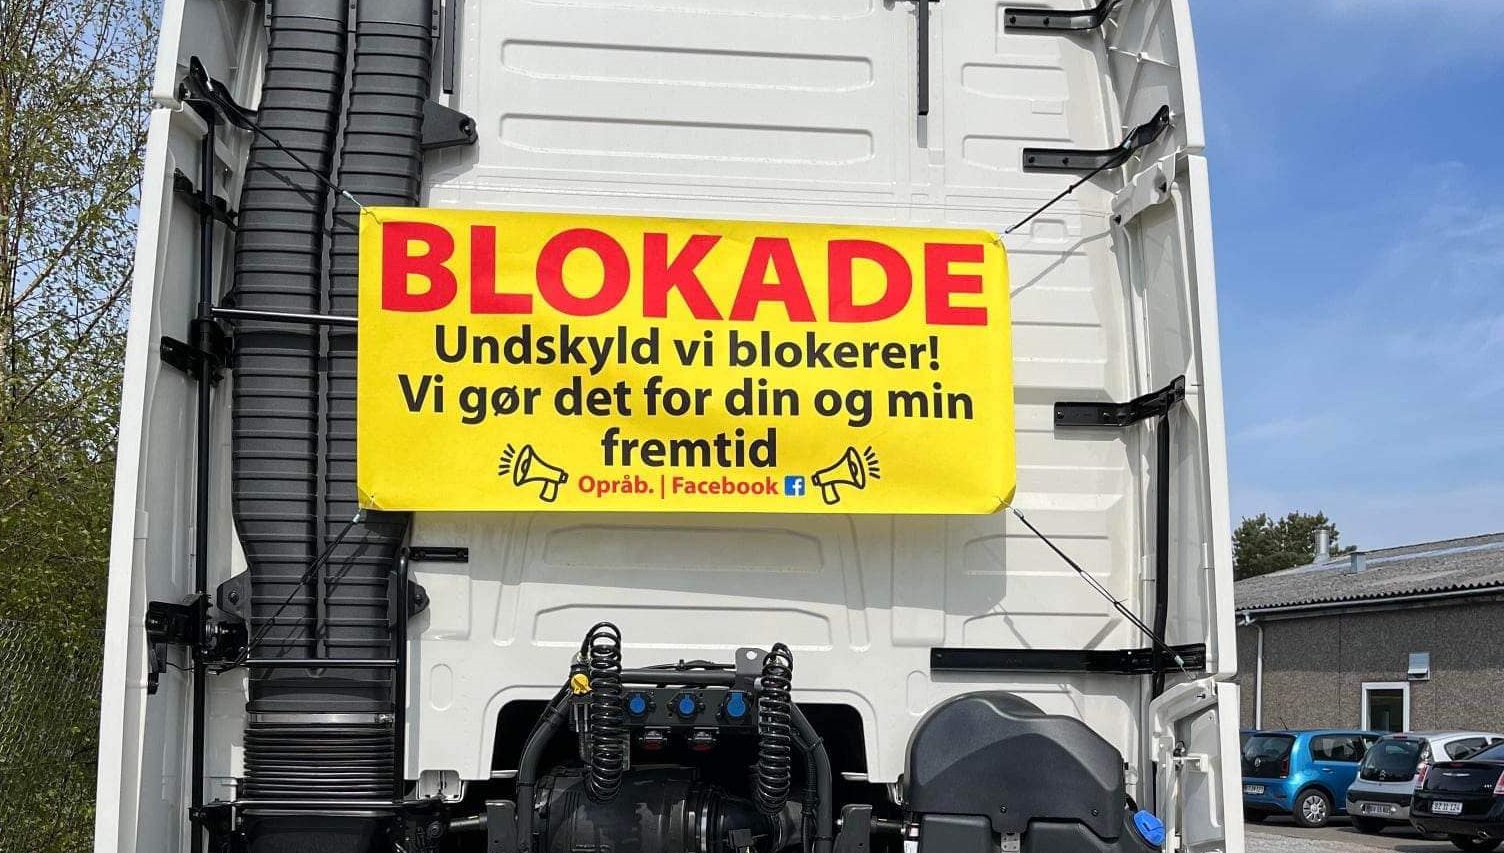 Danskene avlyser lastebildemonstrasjon  